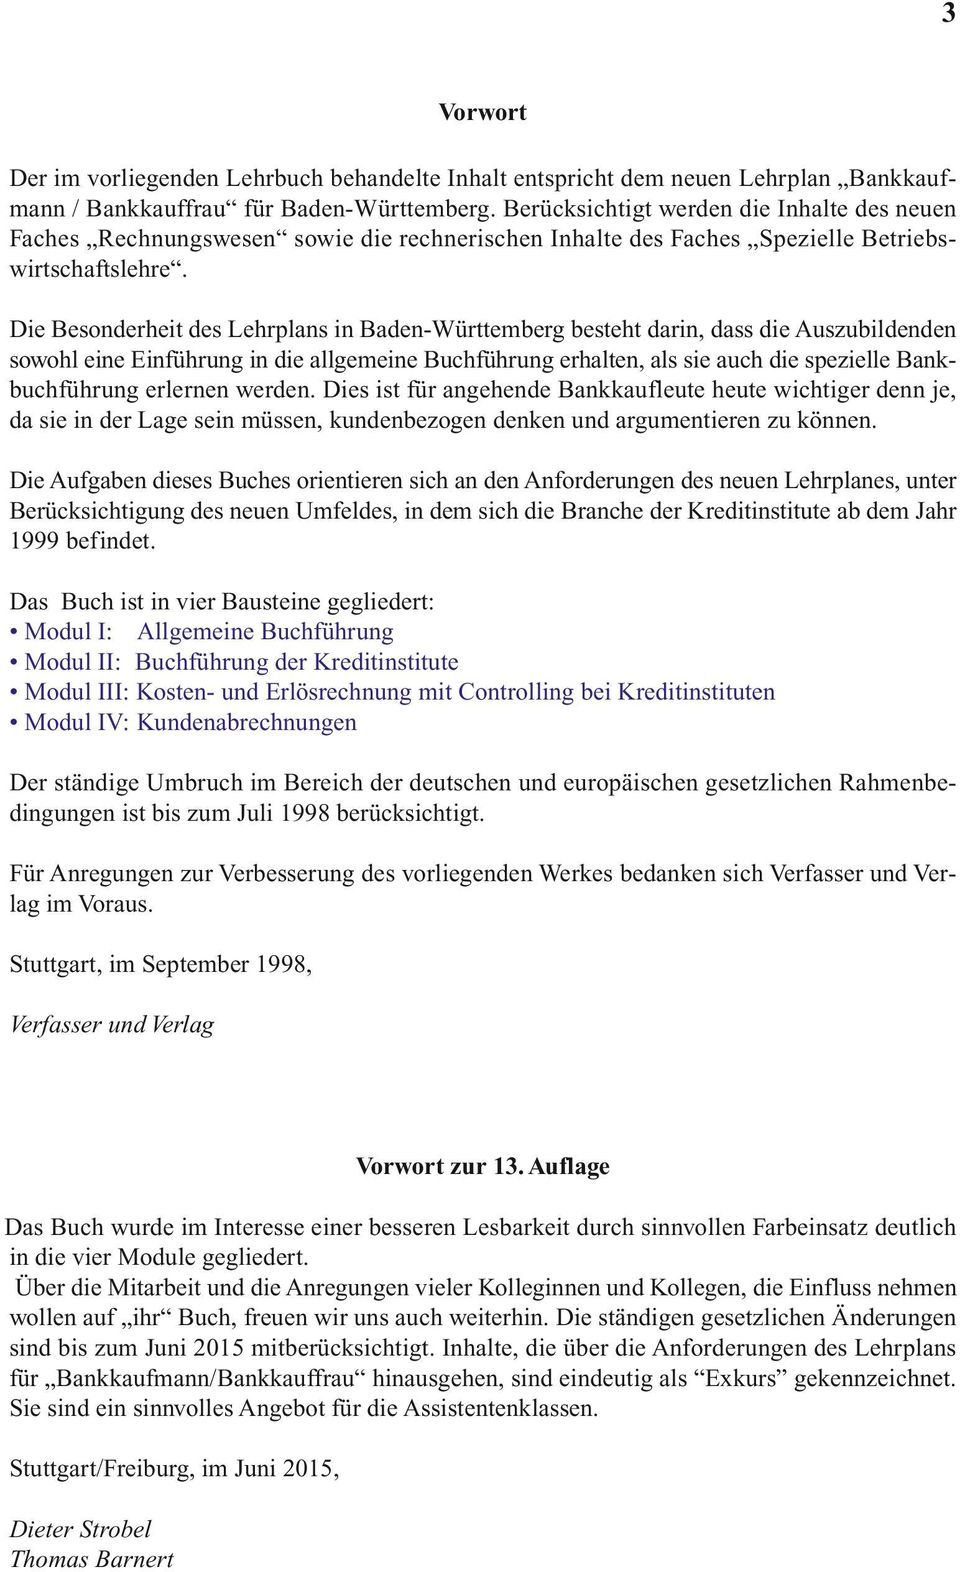 Die Besonderheit des Lehrplans in Baden-Württemberg besteht darin, dass die Auszubildenden sowohl eine Einführung in die allgemeine Buchführung erhalten, als sie auch die spezielle Bankbuchführung